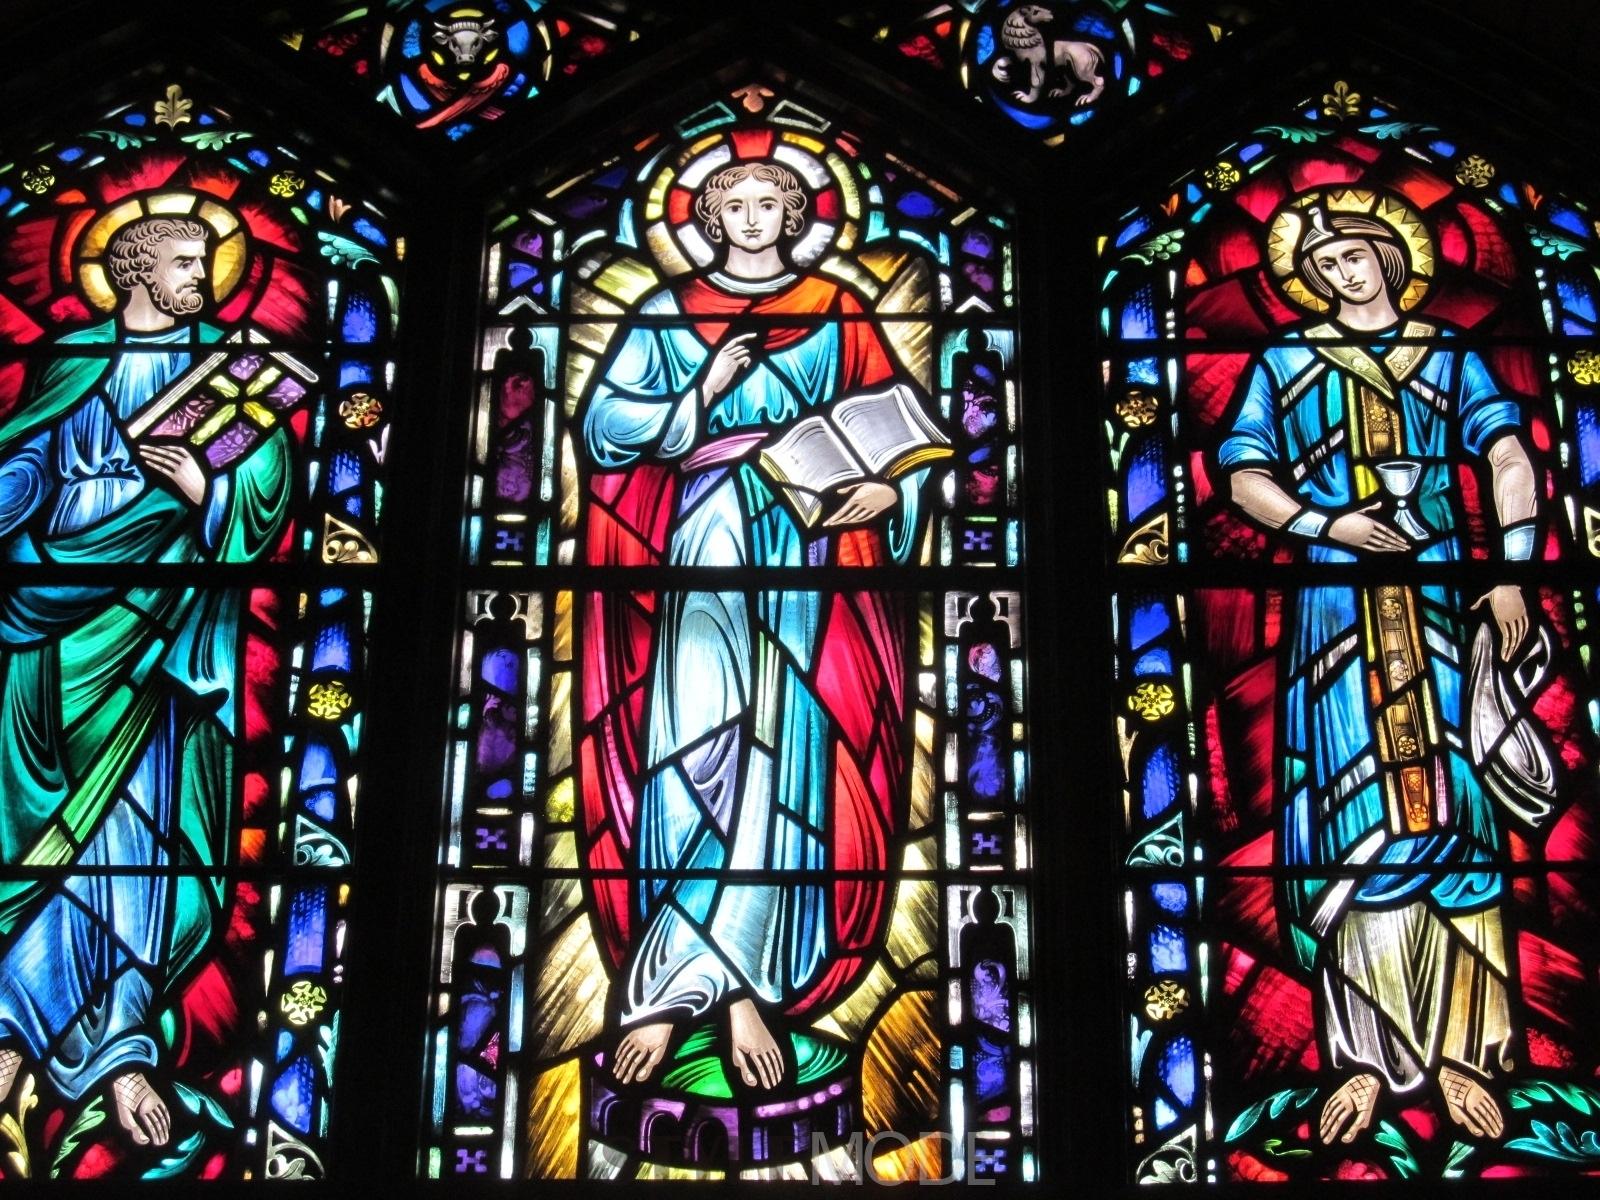 教堂玻璃《圣经故事》